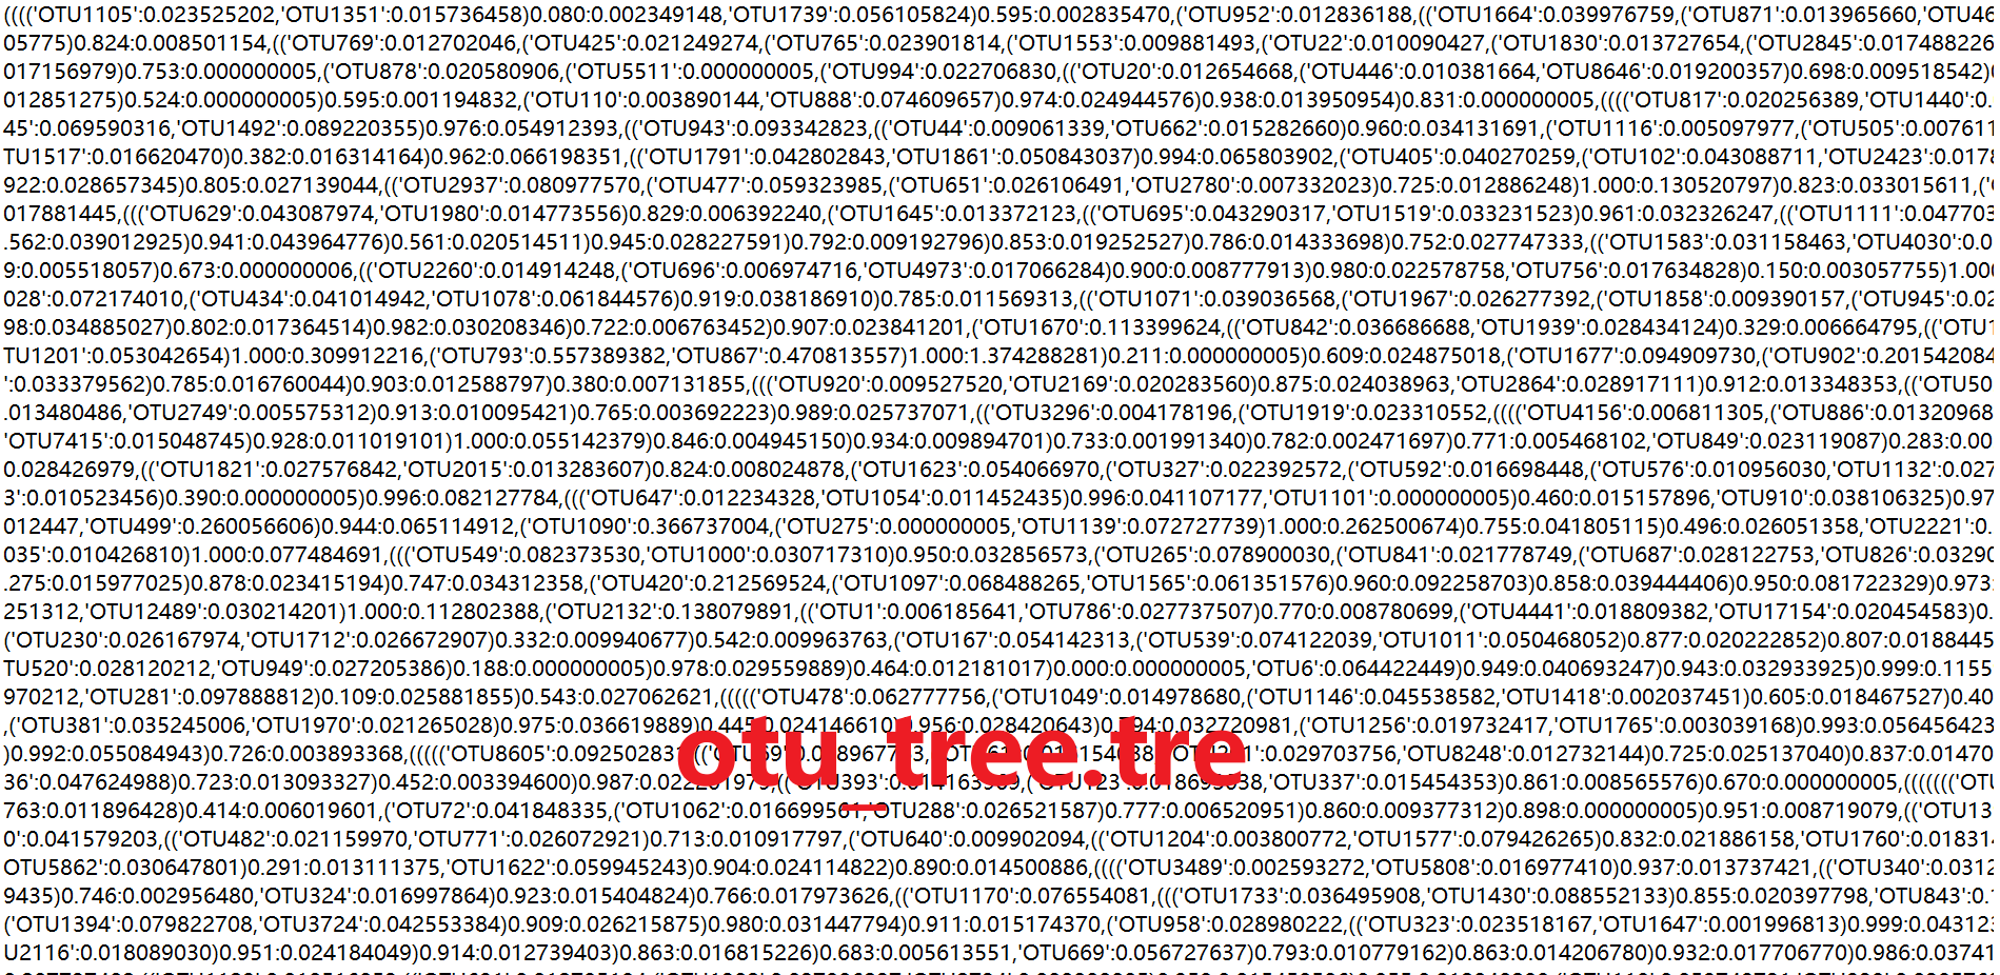 图1-1 otu_tree.tre文件